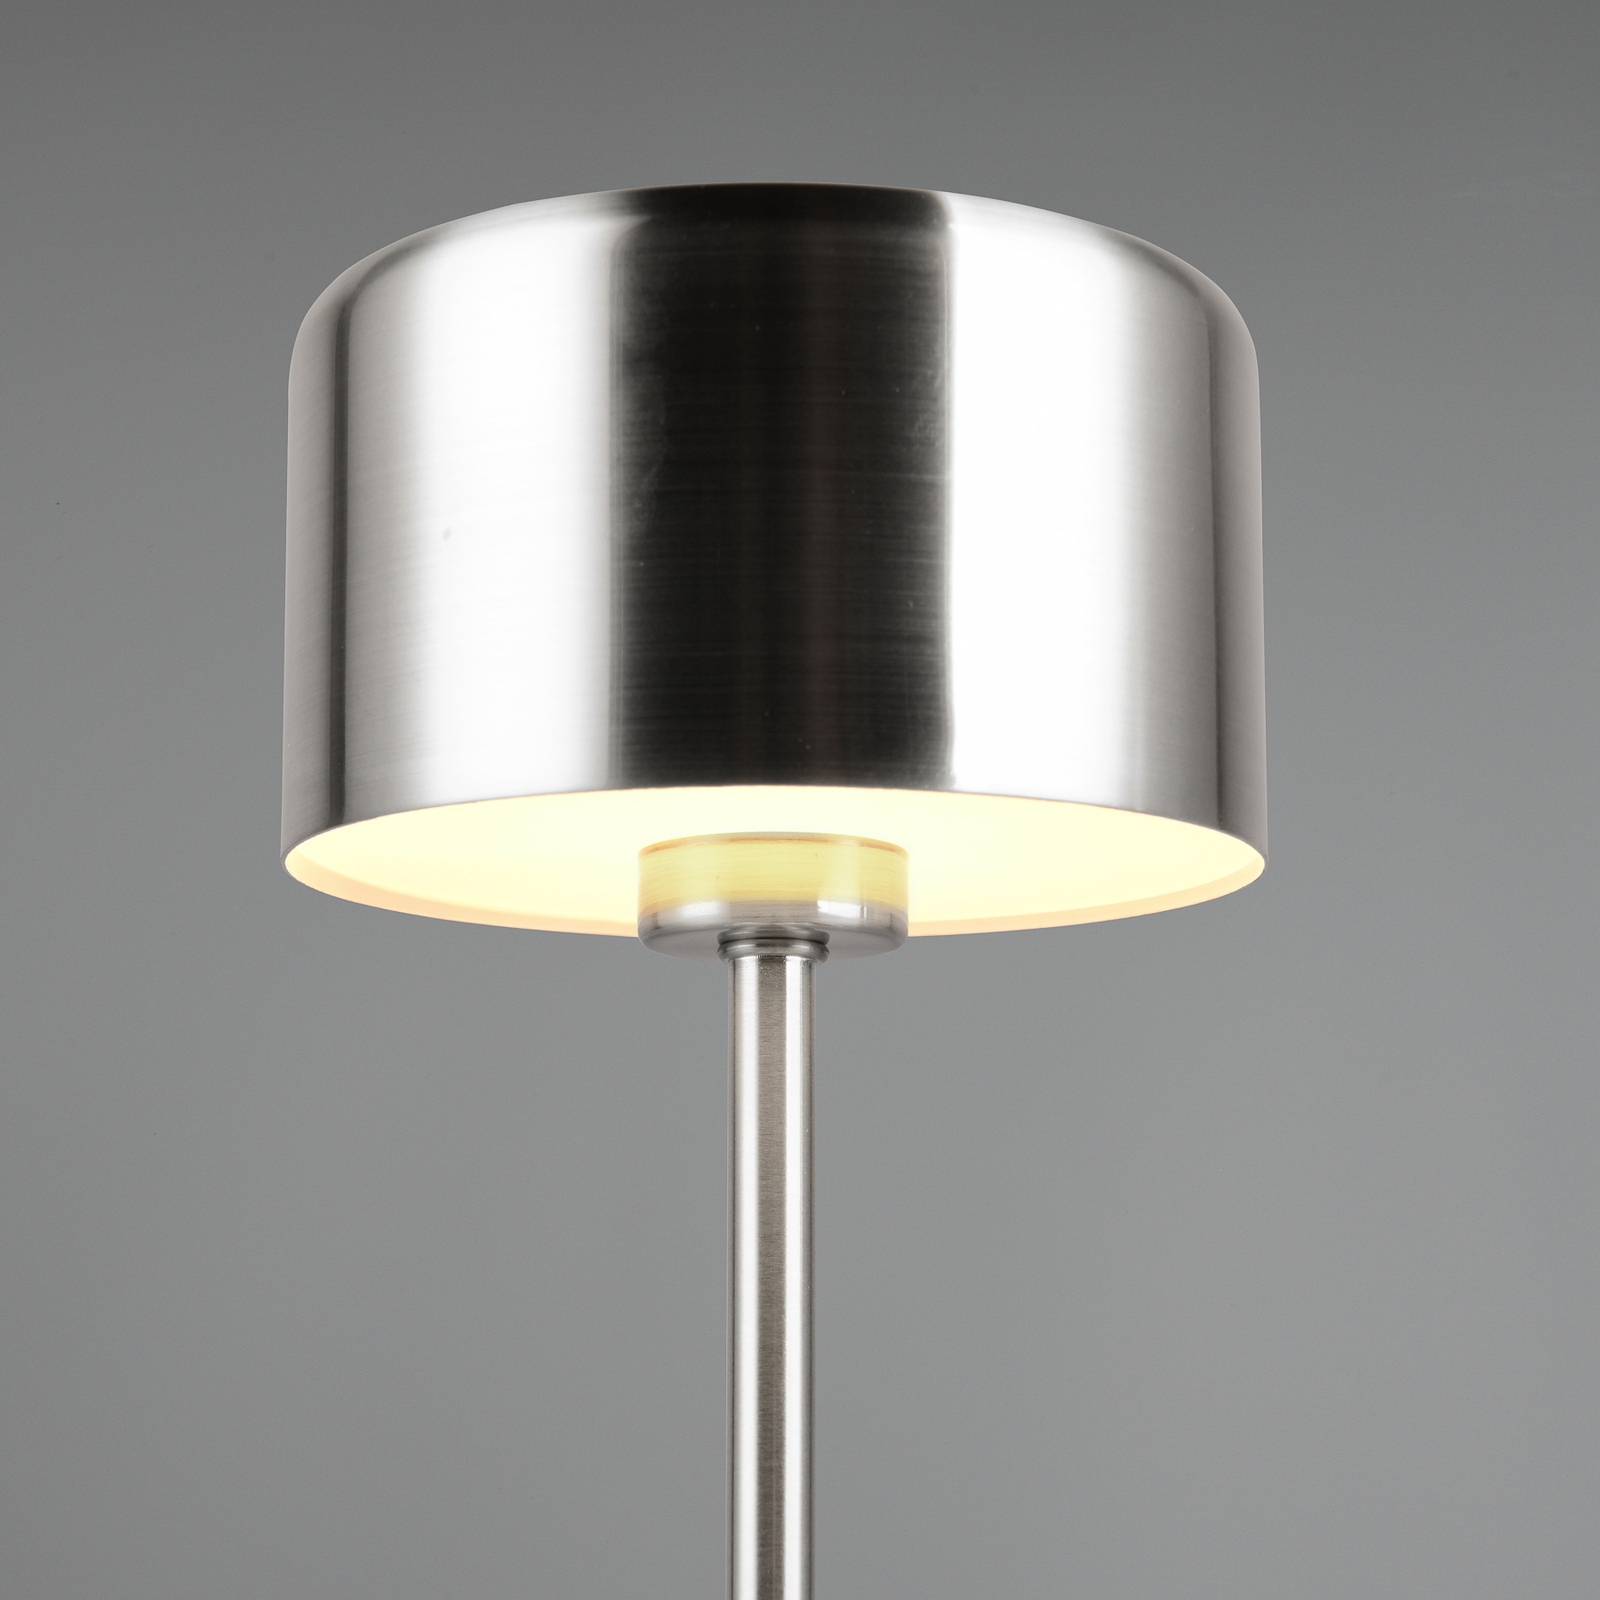 Lampe de table LED rechargeable Jeff, couleur nickel, hauteur 30 cm, métal